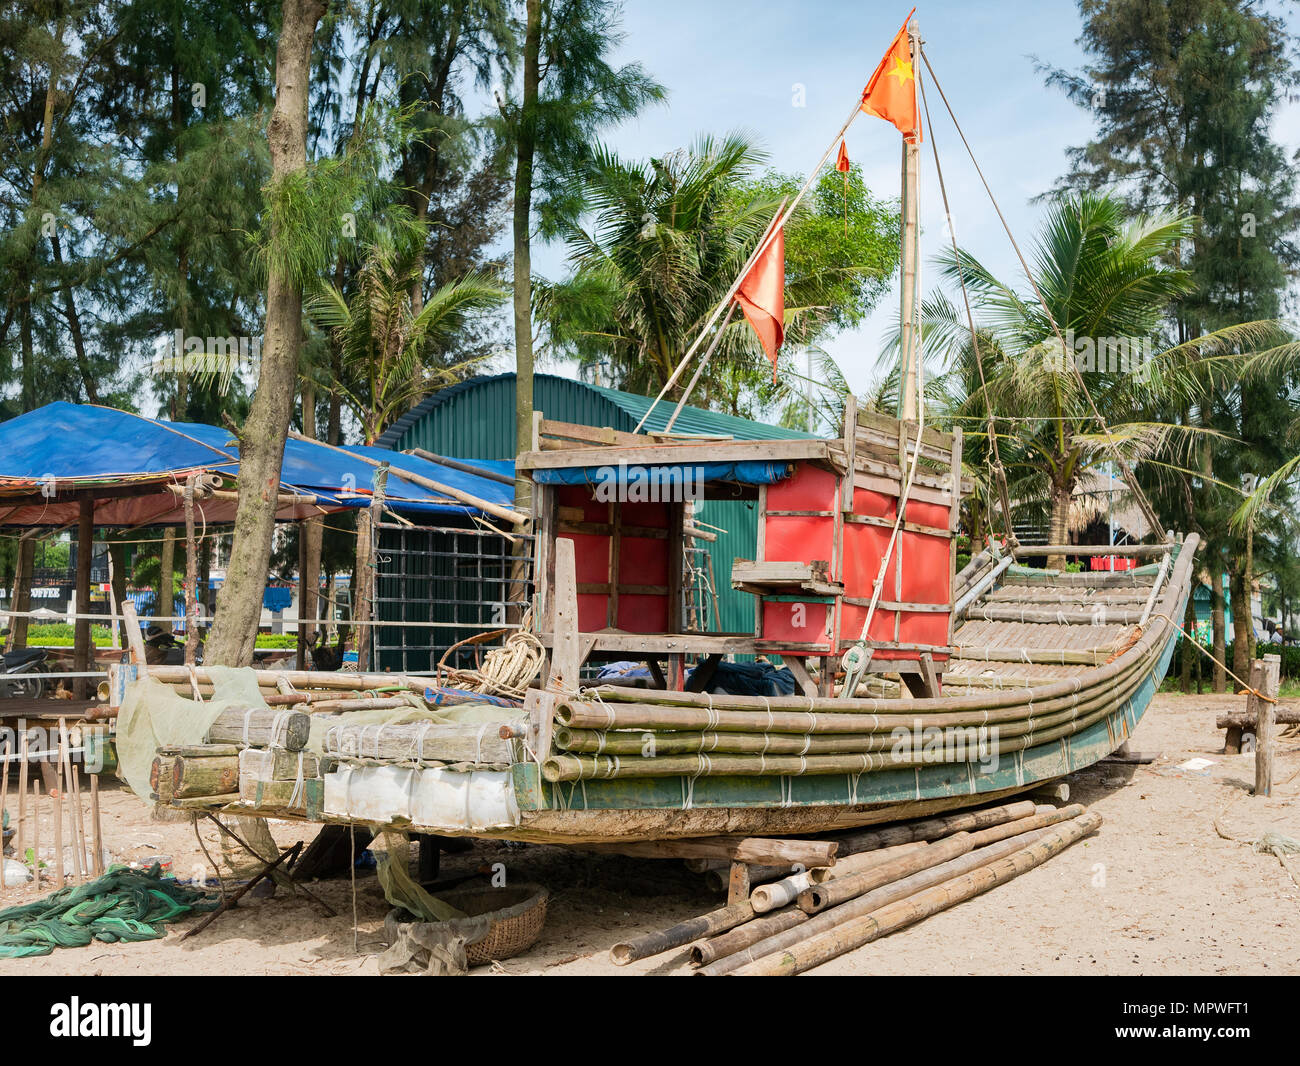 Bateau de pêche de base en bambou à Sam Fils Plage dans la province de Thanh Hoa, Vietnam Banque D'Images